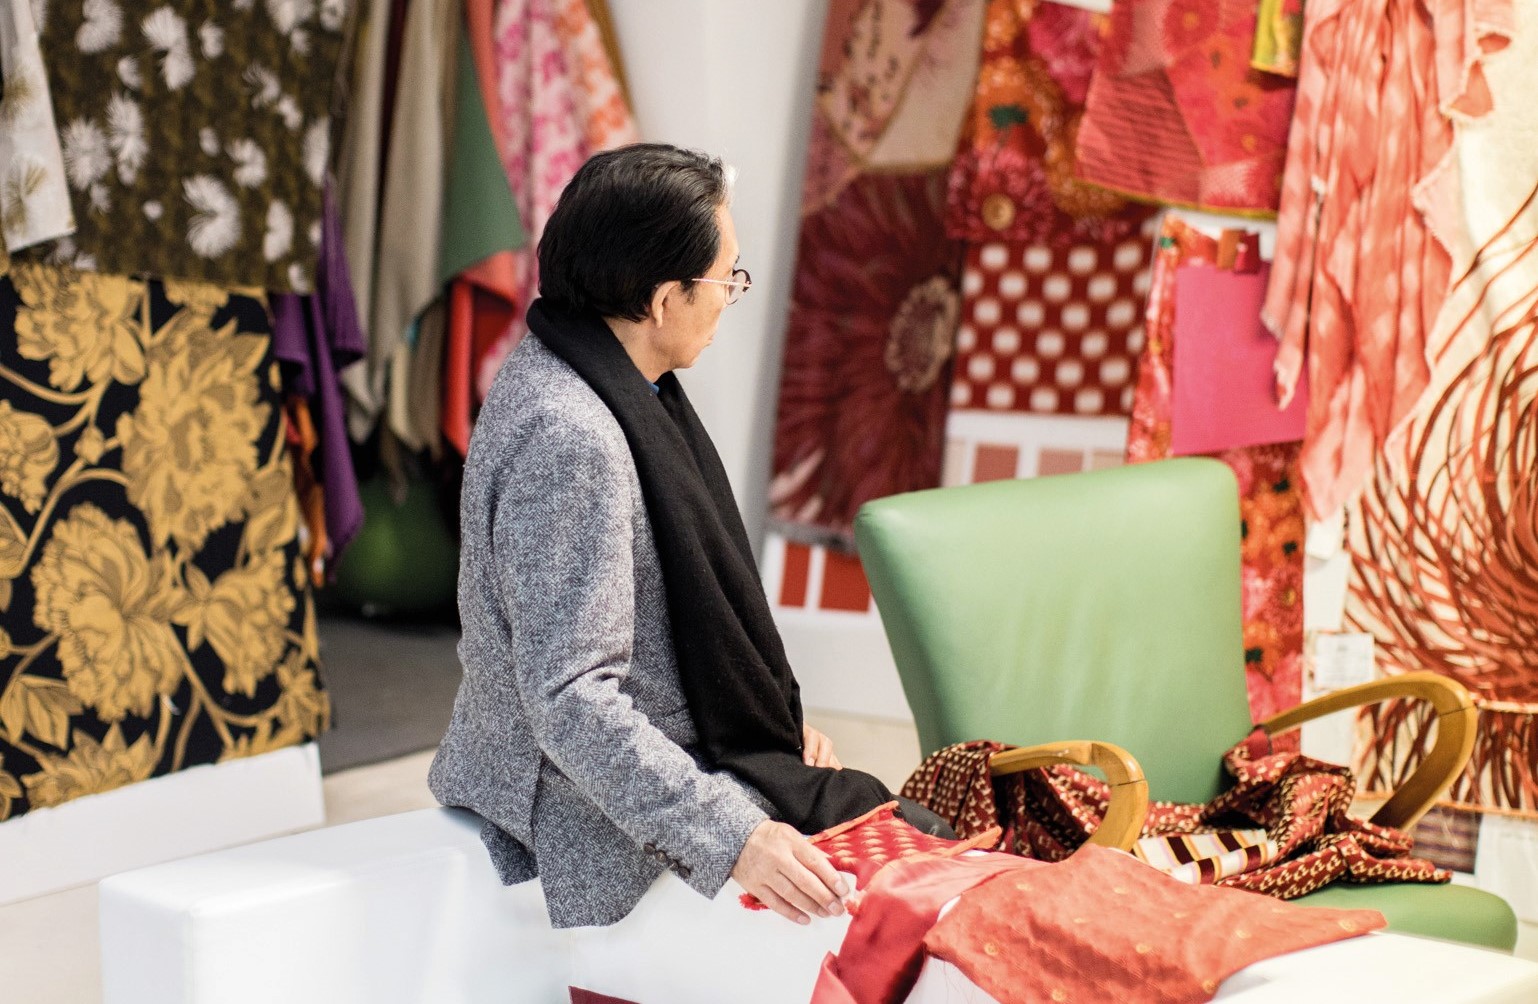 傳統工藝織品是高田賢三創作的主要素材，將不同色彩的布料展現四季更迭的細膩變化，塑造令人身歷其境的感動氛圍，成為他構思傢俱設計時的原點。